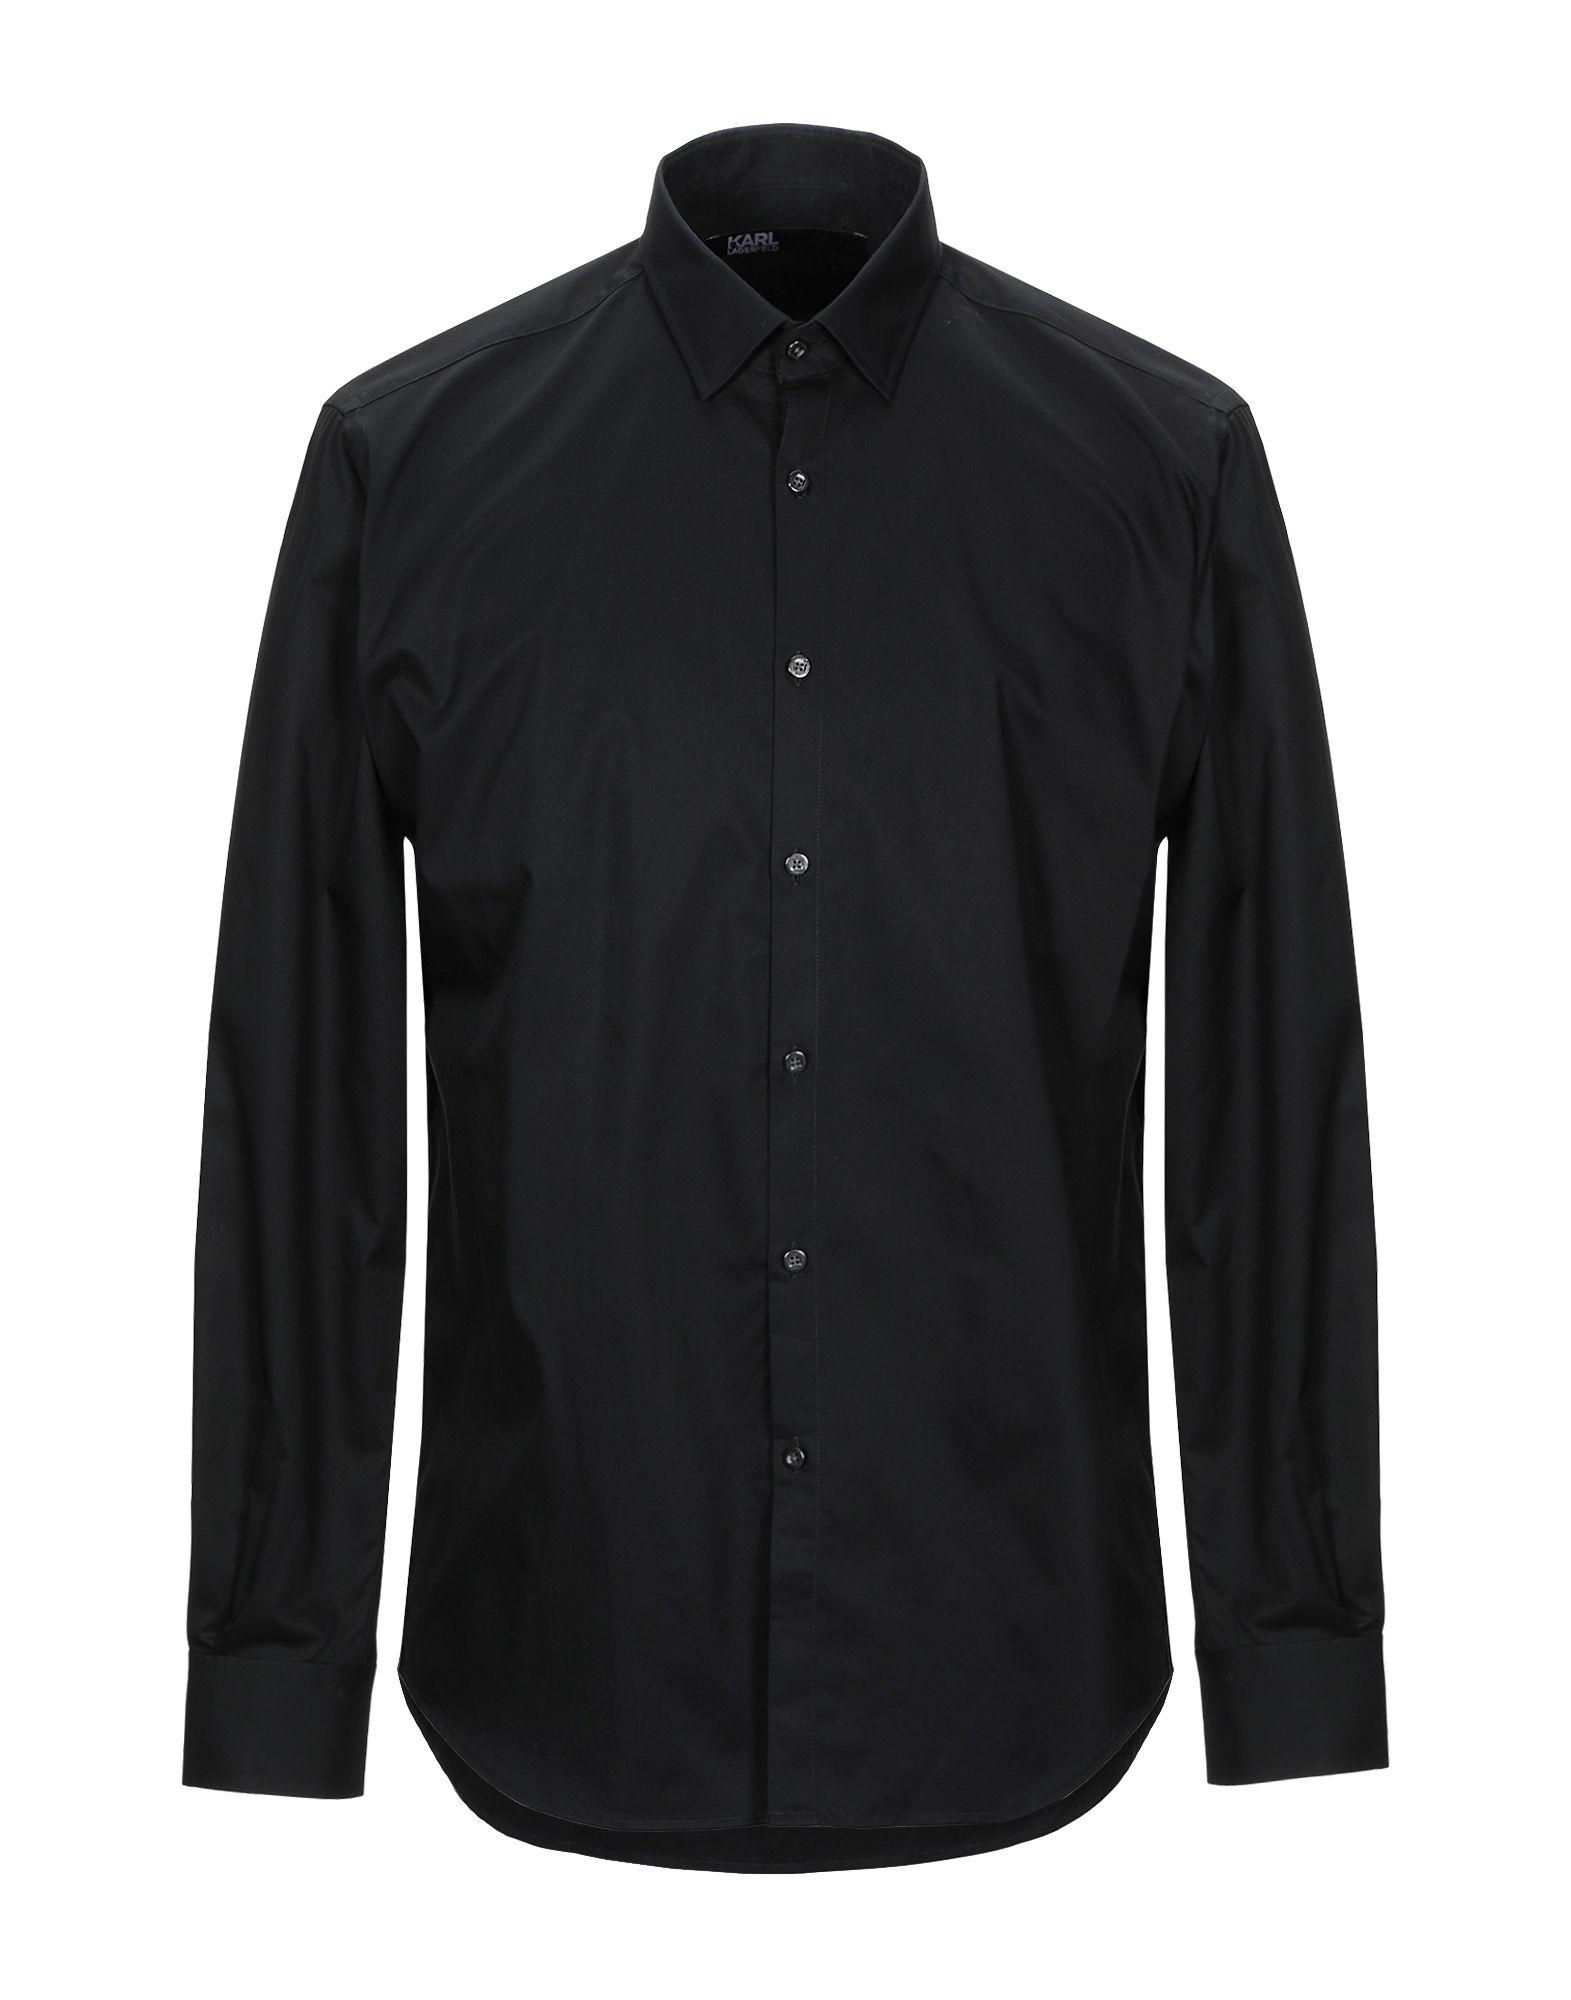 Karl Lagerfeld Shirt in Black for Men - Lyst